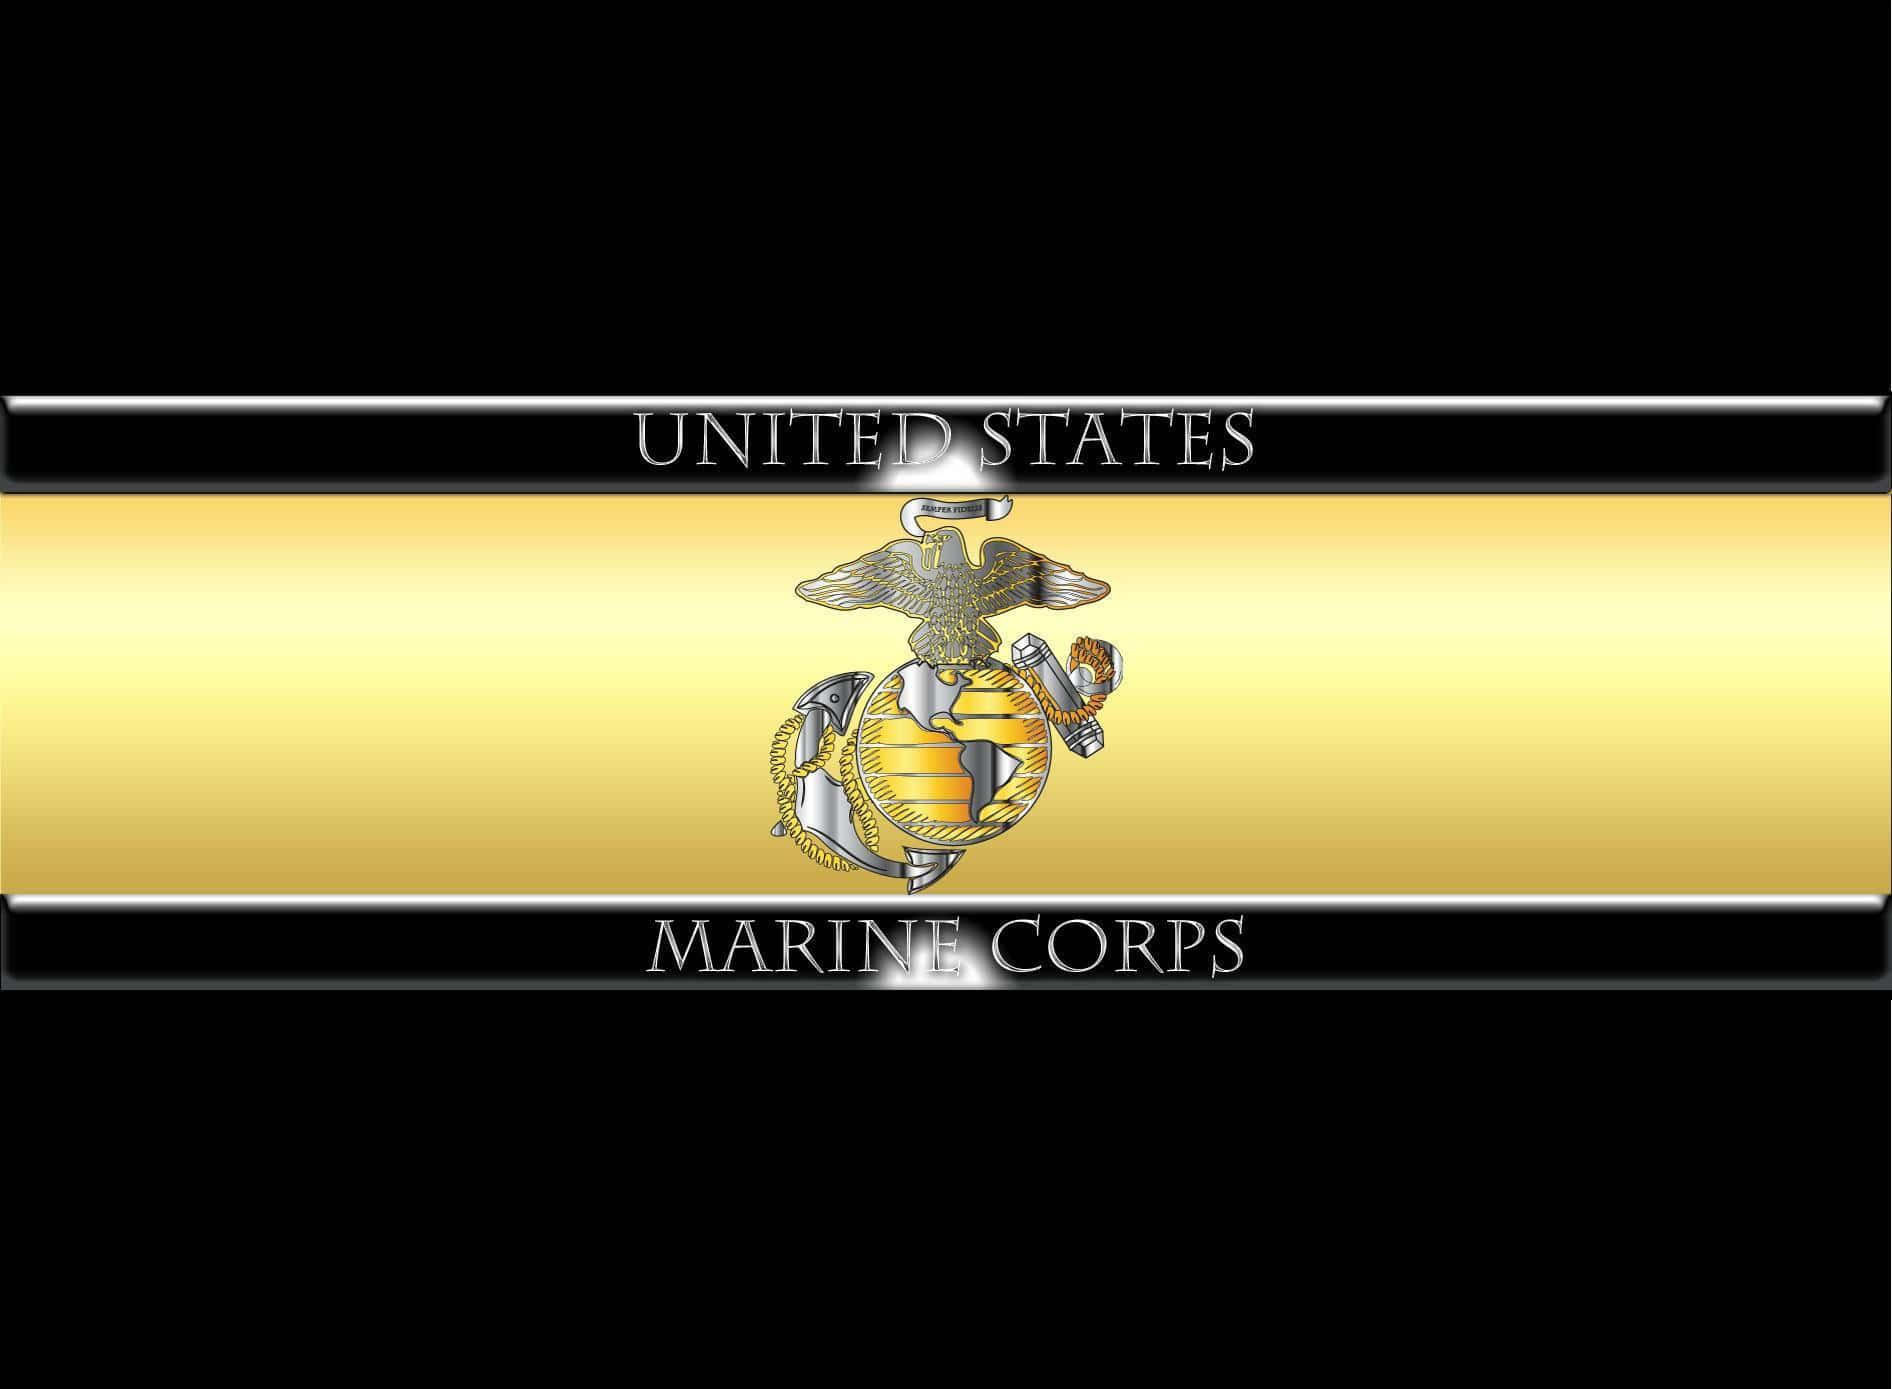 Emblemadel Cuerpo De Marines De Los Estados Unidos En Un Fondo Dorado Fondo de pantalla